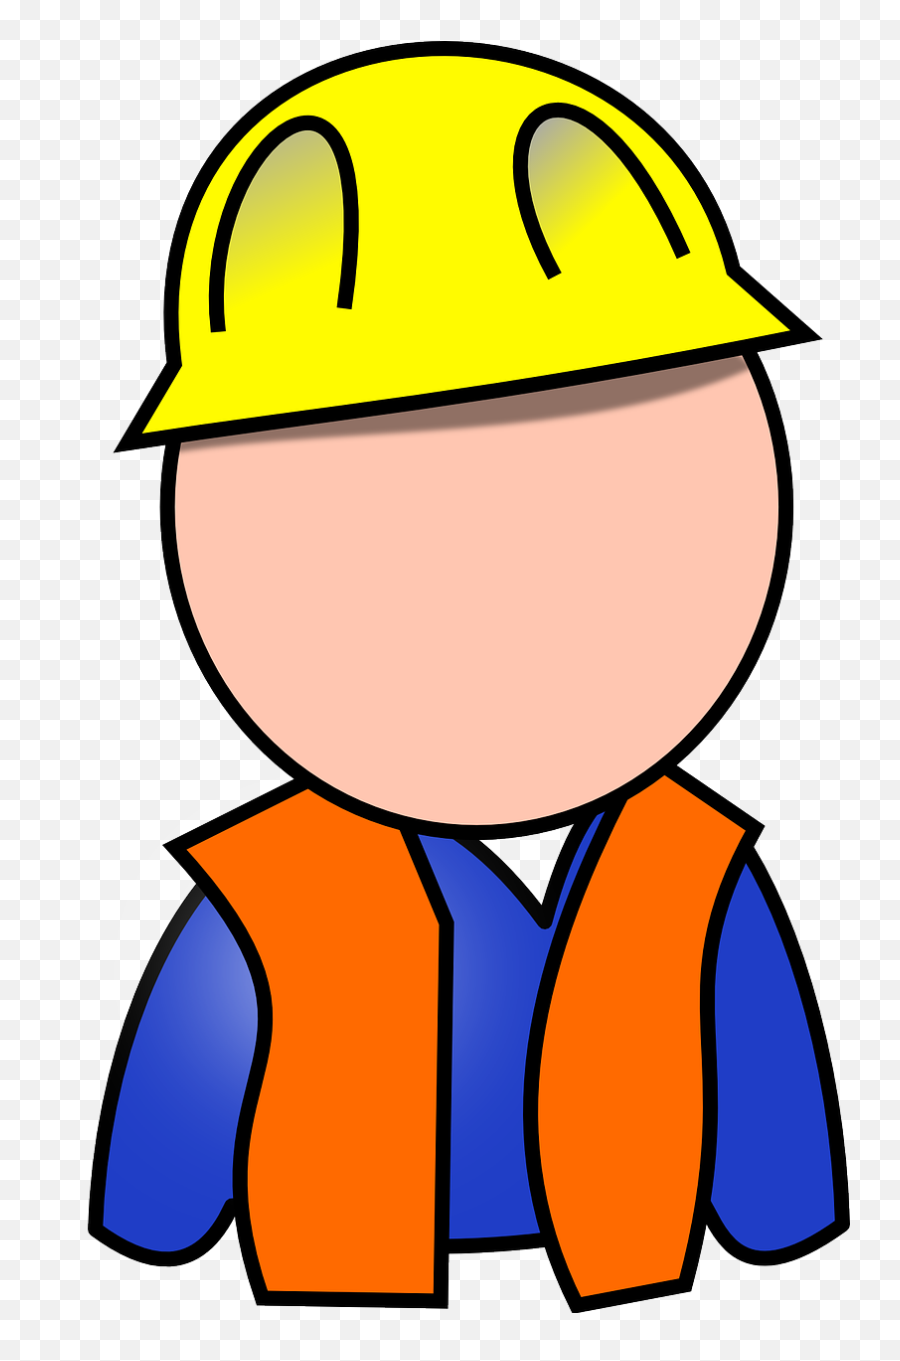 Builder Construction Worker Building - Blue Collar Worker Clipart Emoji,Airplane Emoticon